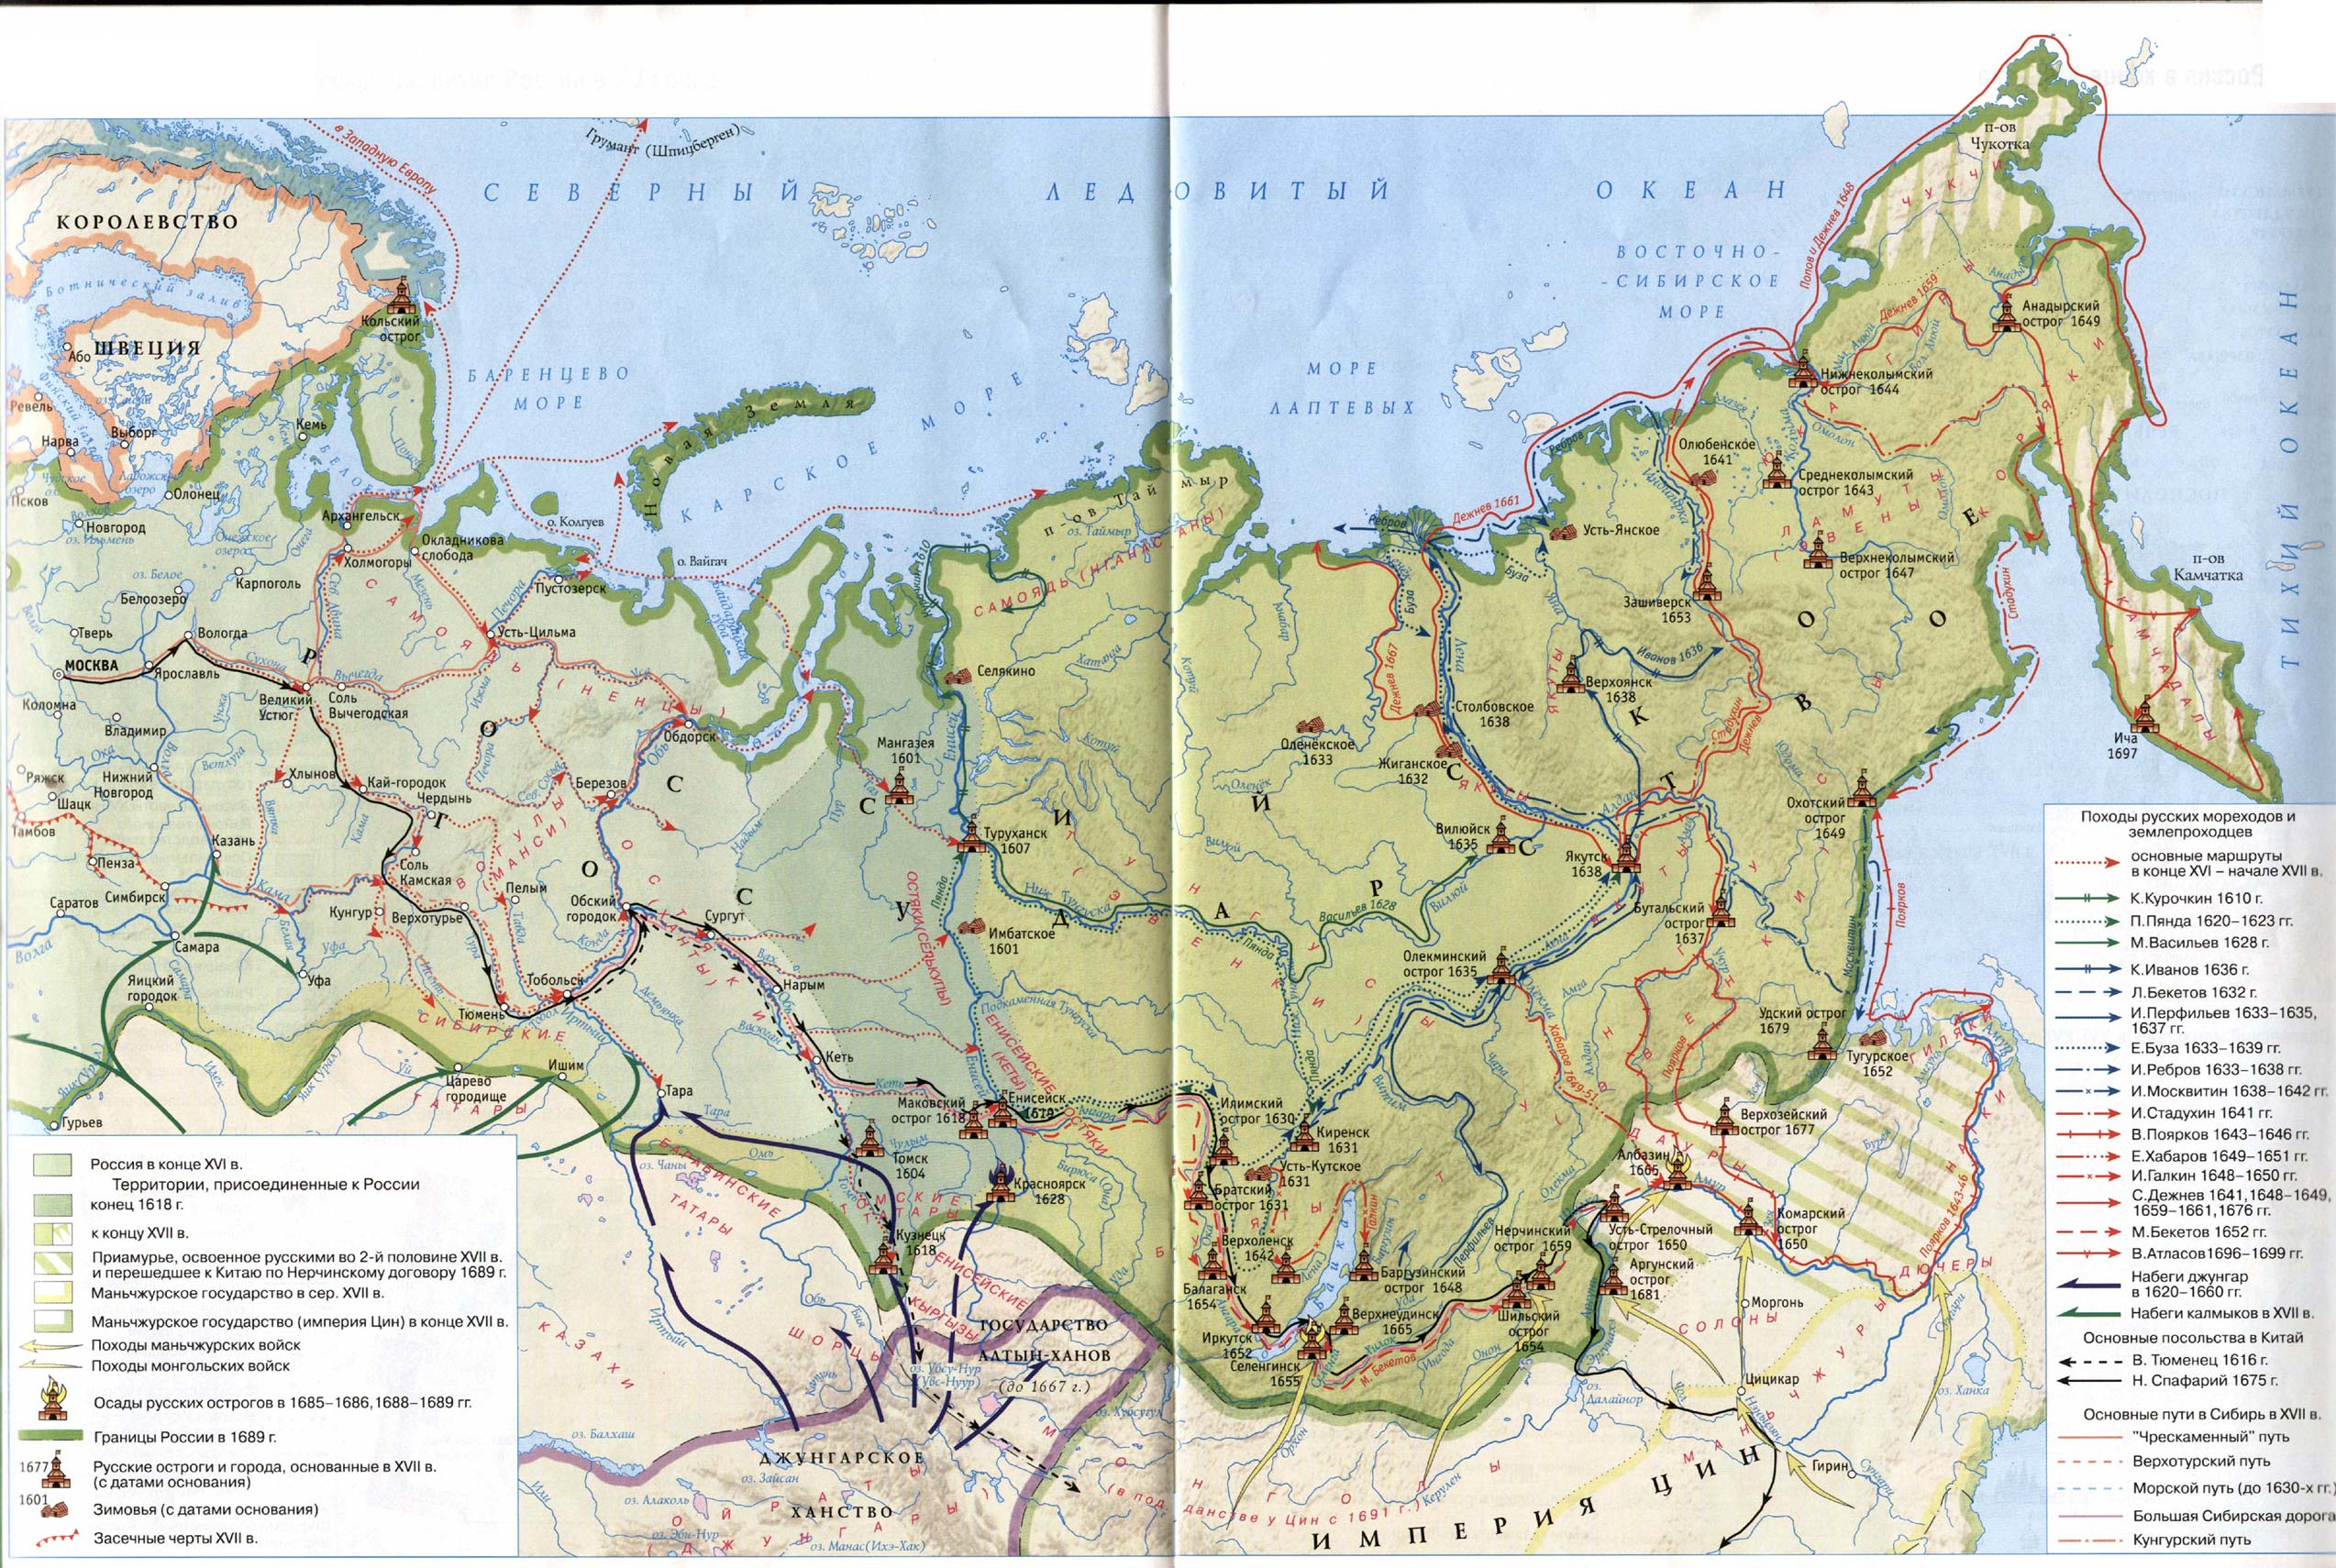 Геологическая карта восточной сибири